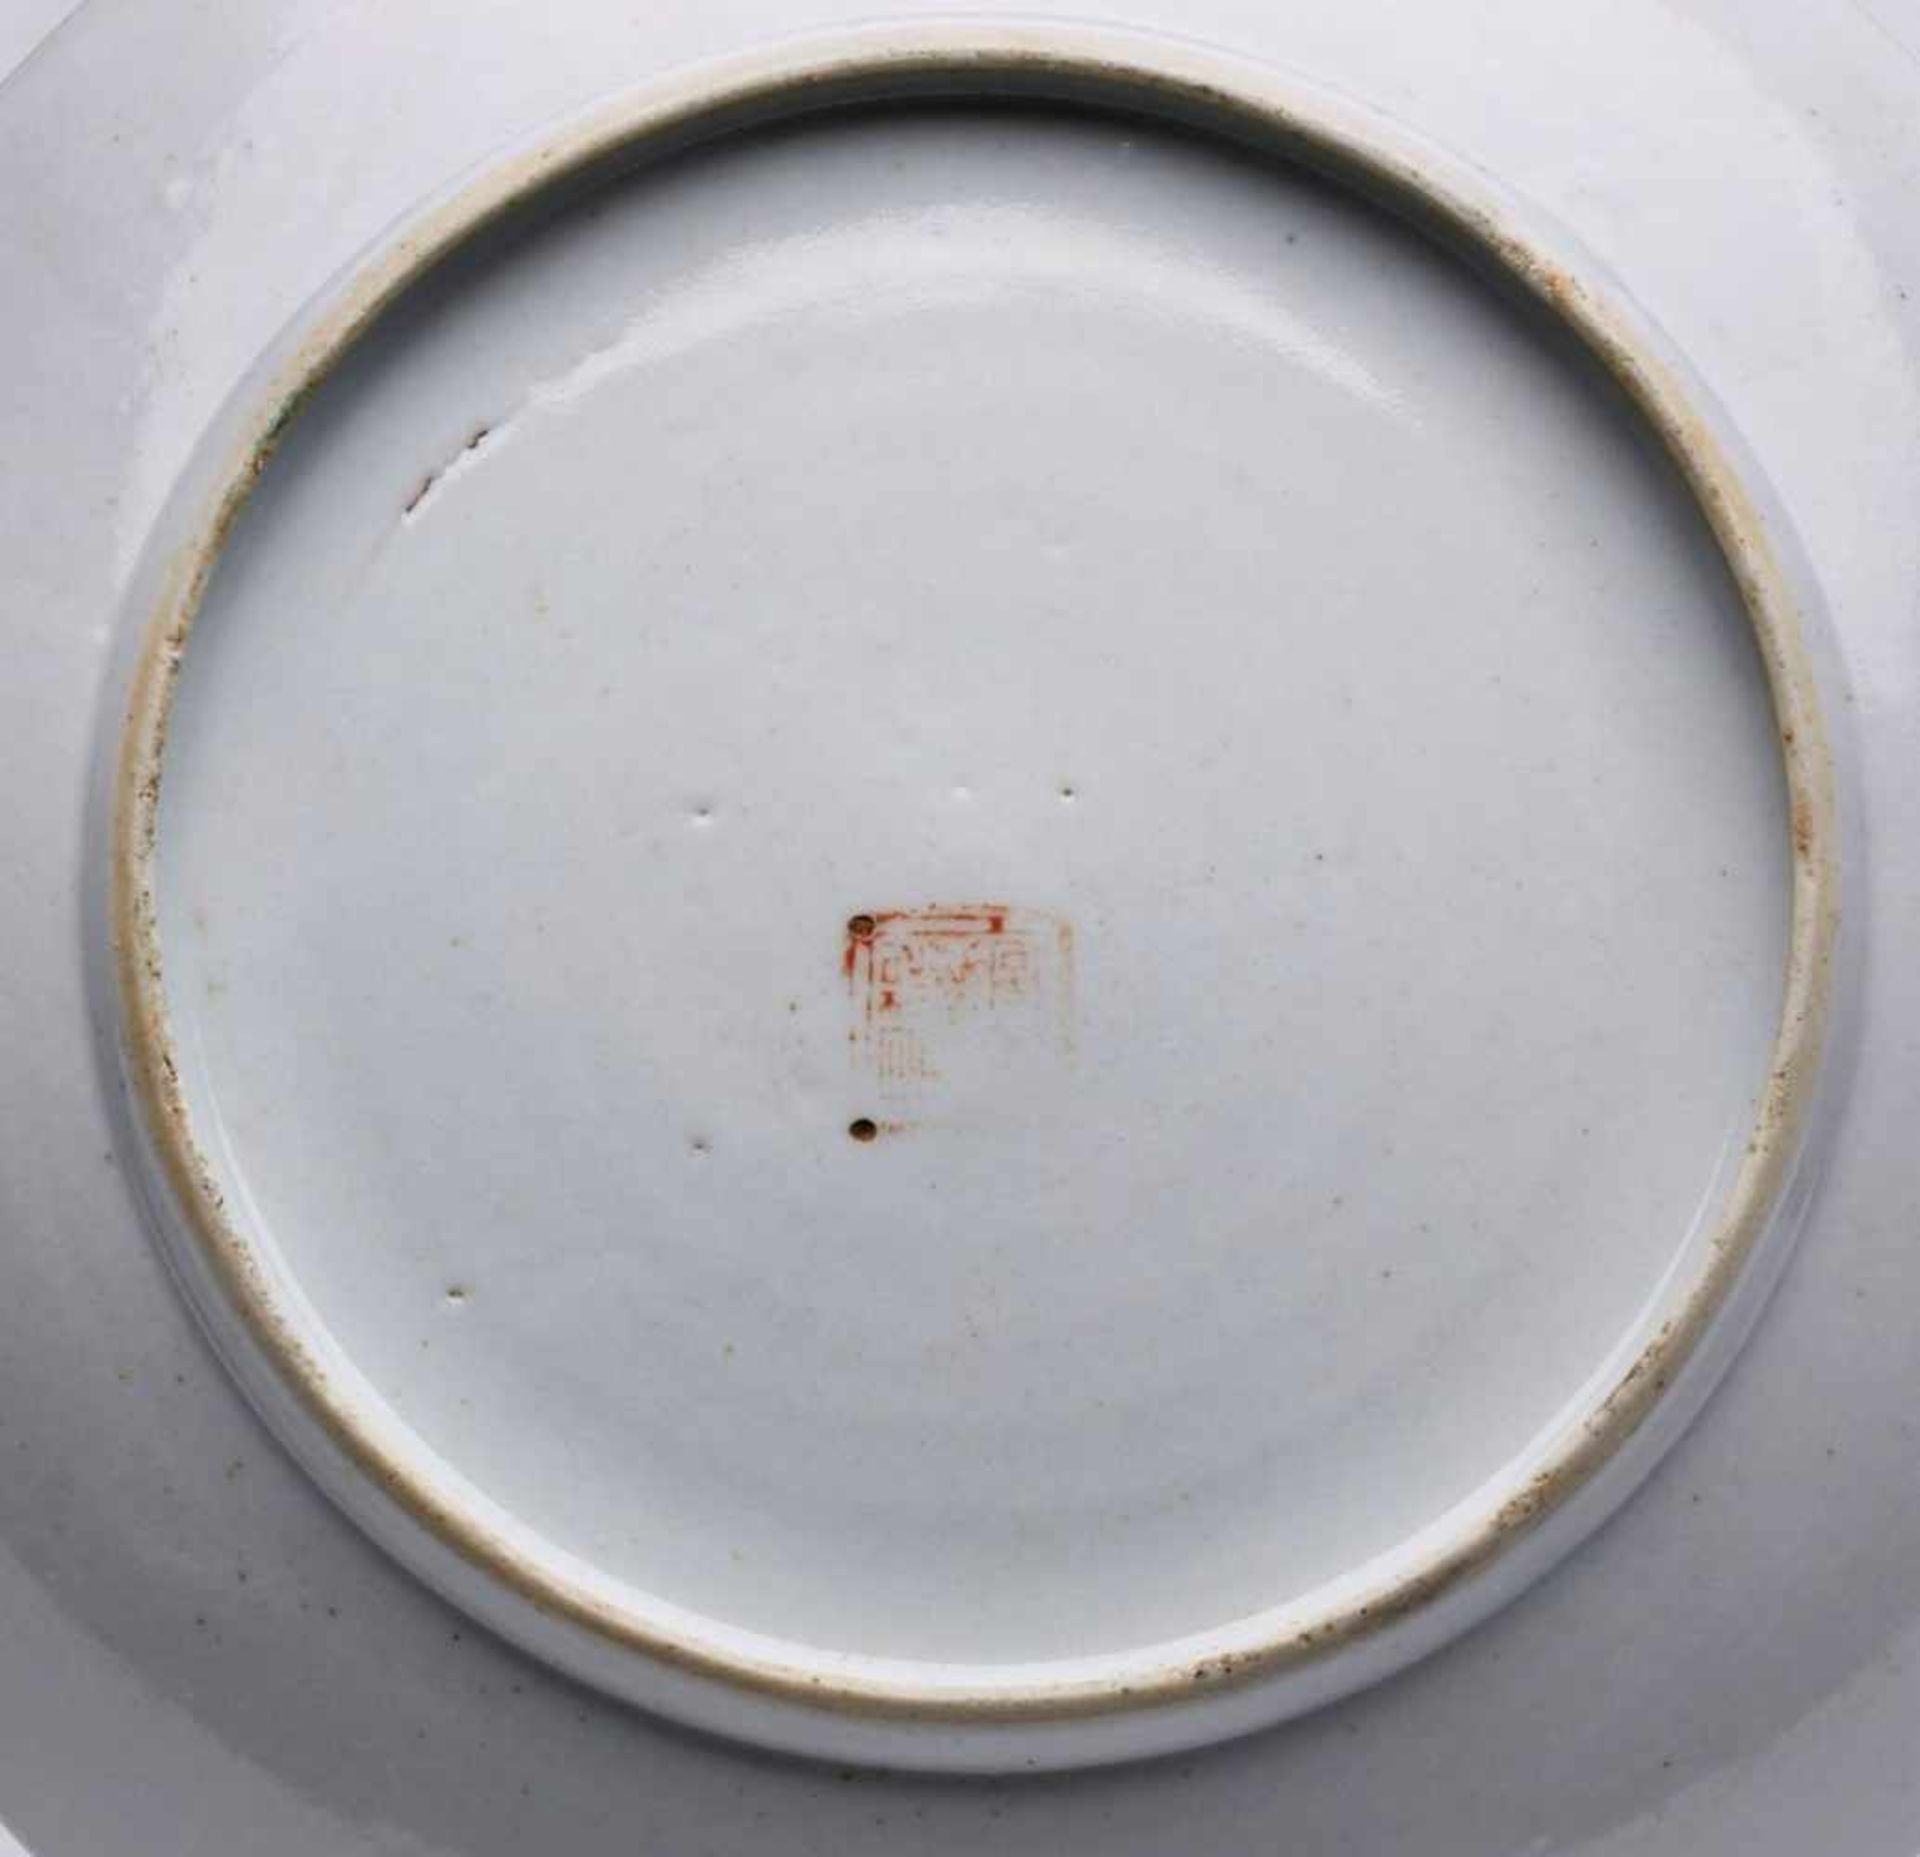 Teller, China wohl 19. Jh.Porzellan m. farbigem Emaille-Dekor. leicht ge- muldete Form m. zentr. - Bild 2 aus 2